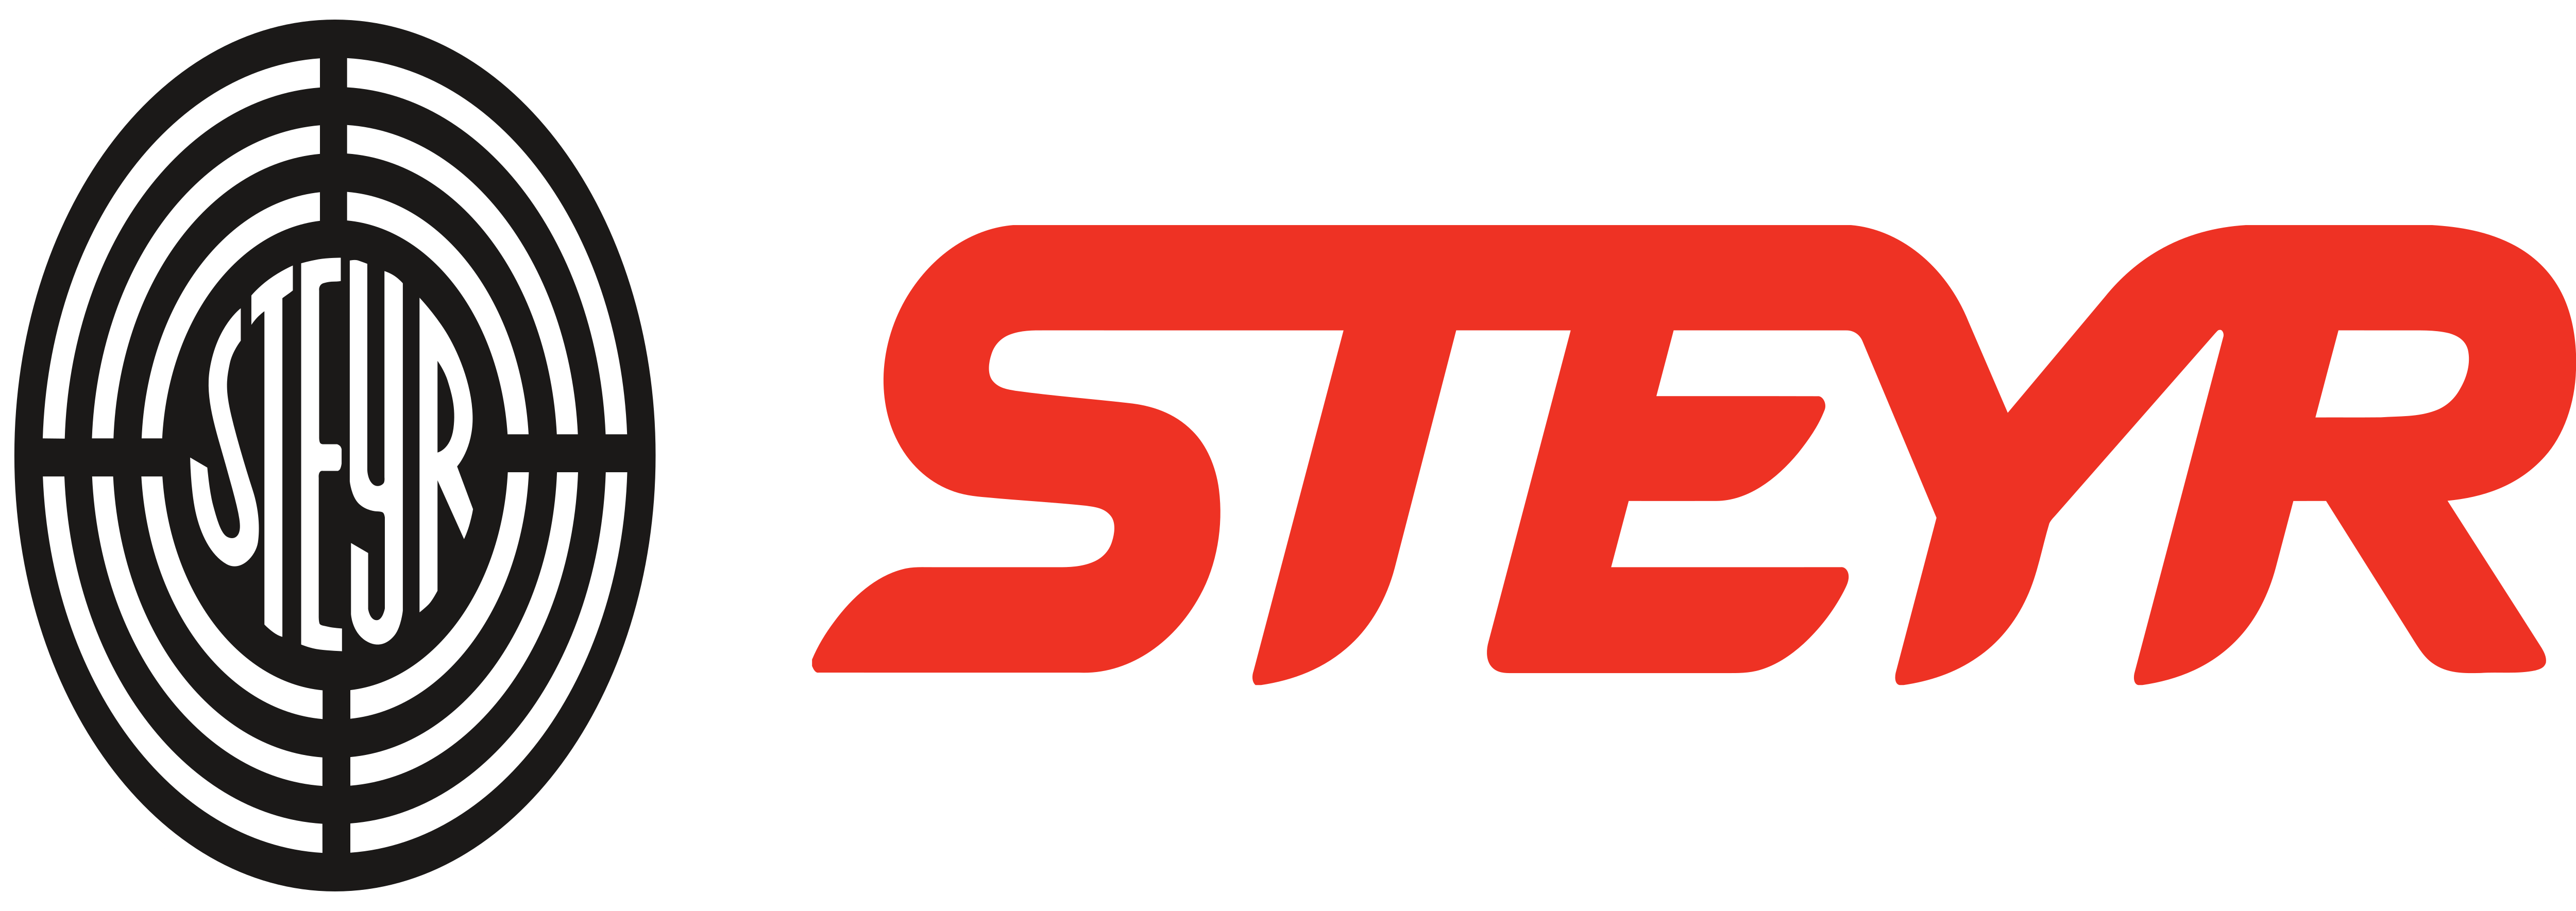 Styer Logo - Steyr Mannlicher AG – Logos Download